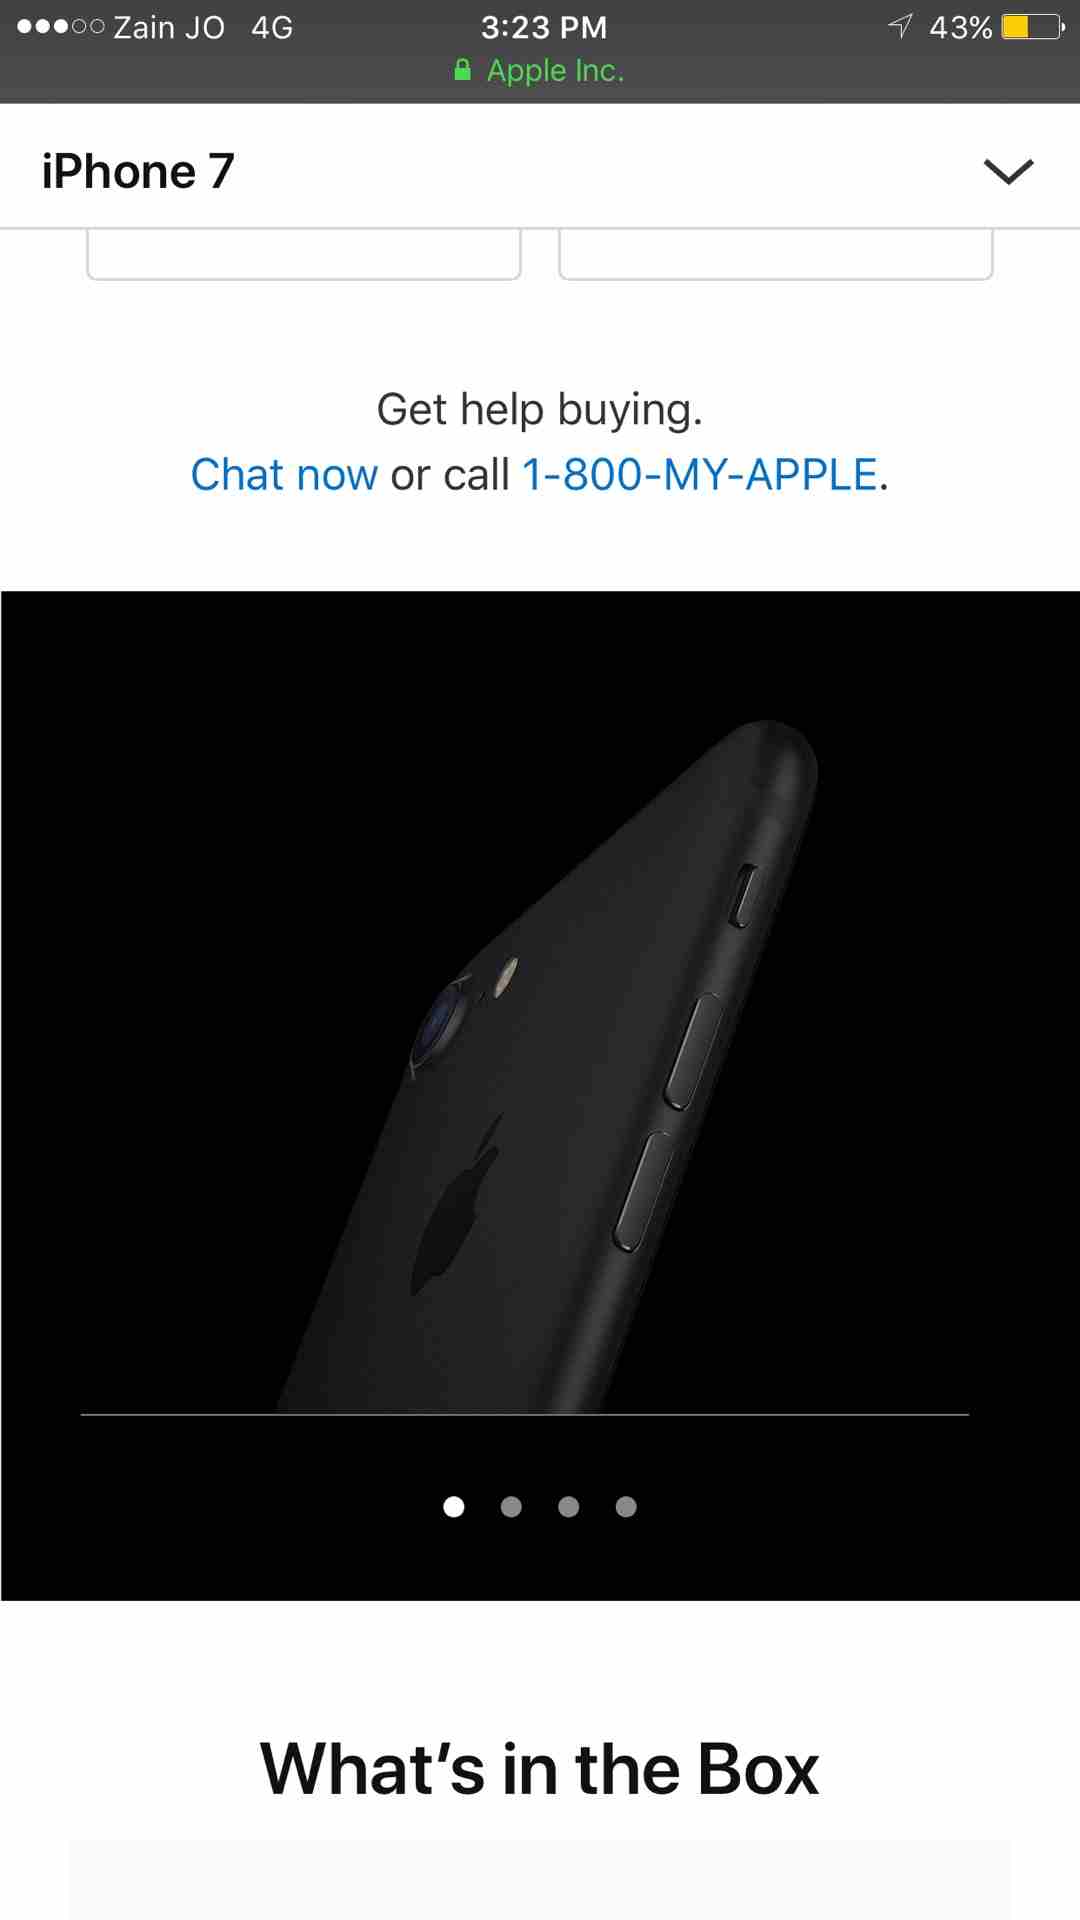 اكس بوكس ون مستعمل للبيع لا تنسَ أنك شاهدت هذا الإعلان في عنكبوت اكس بوكس ون مستعمل للبي�-  iphone 7 (265 gb) Black...